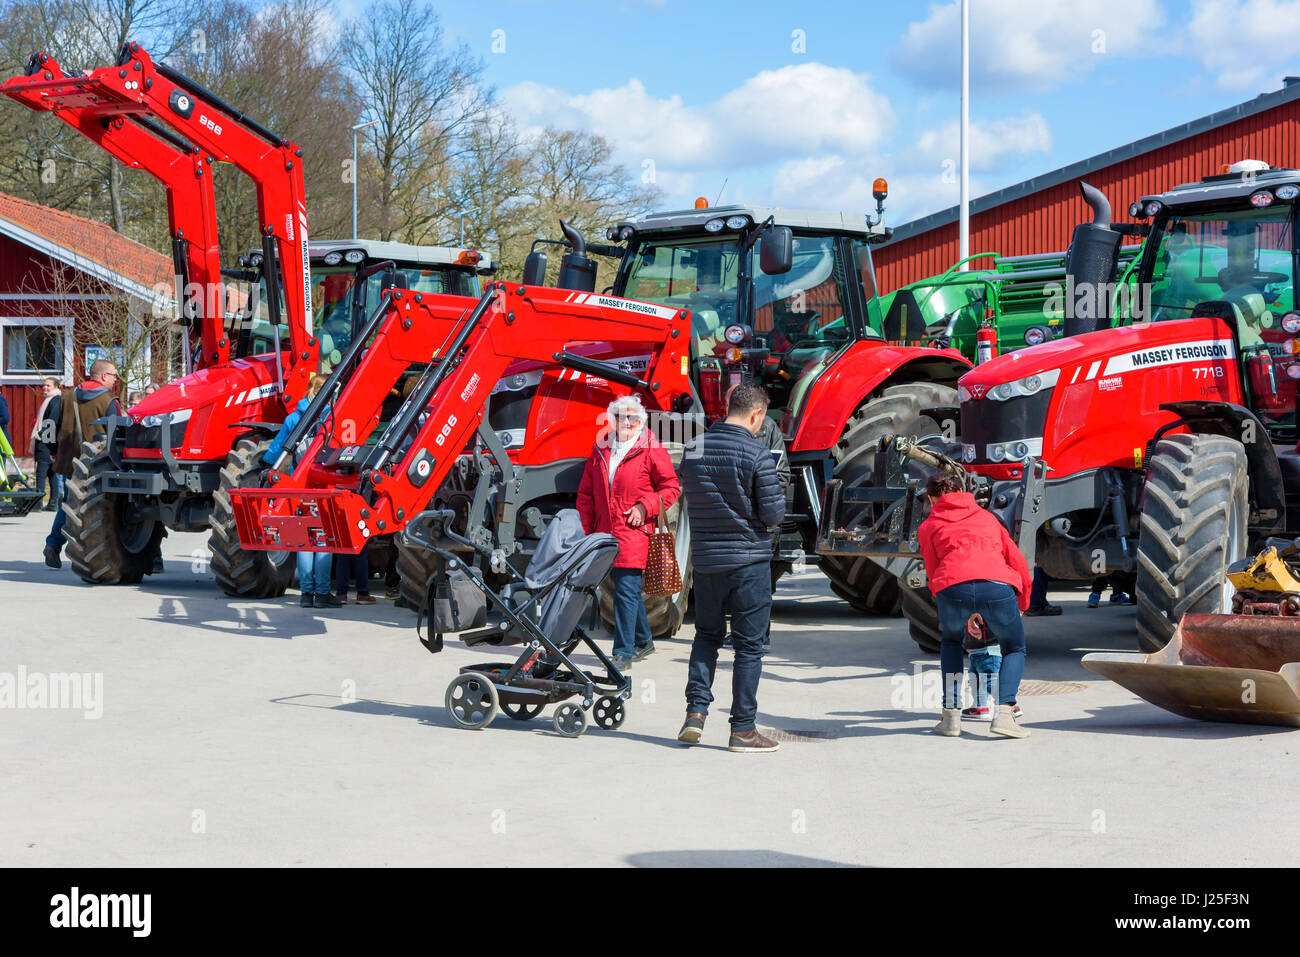 Brakne Hoby, Schweden - 22. April 2017: Dokumentation der öffentlichen Kleinbauern Tag. Händler von Massey Ferguson Traktoren anzeigen tatsächlichen Kunden Schienen Stockfoto